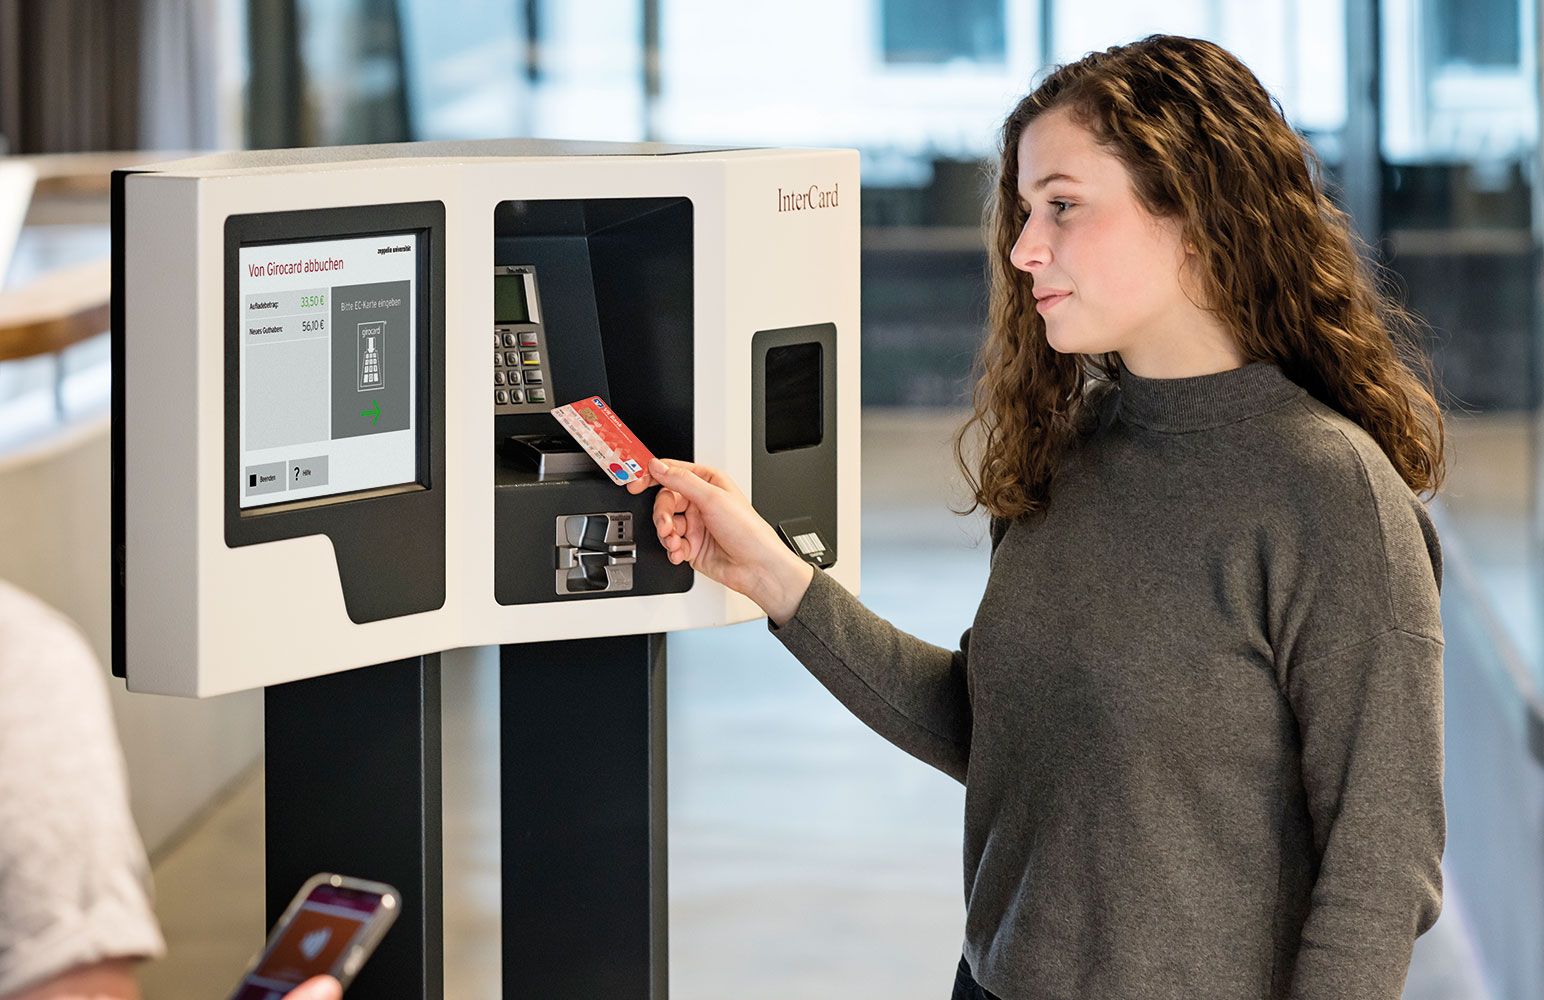 Studentin lädt Guthaben am Aufladeautomaten smartUP auf ihre Chipkarte